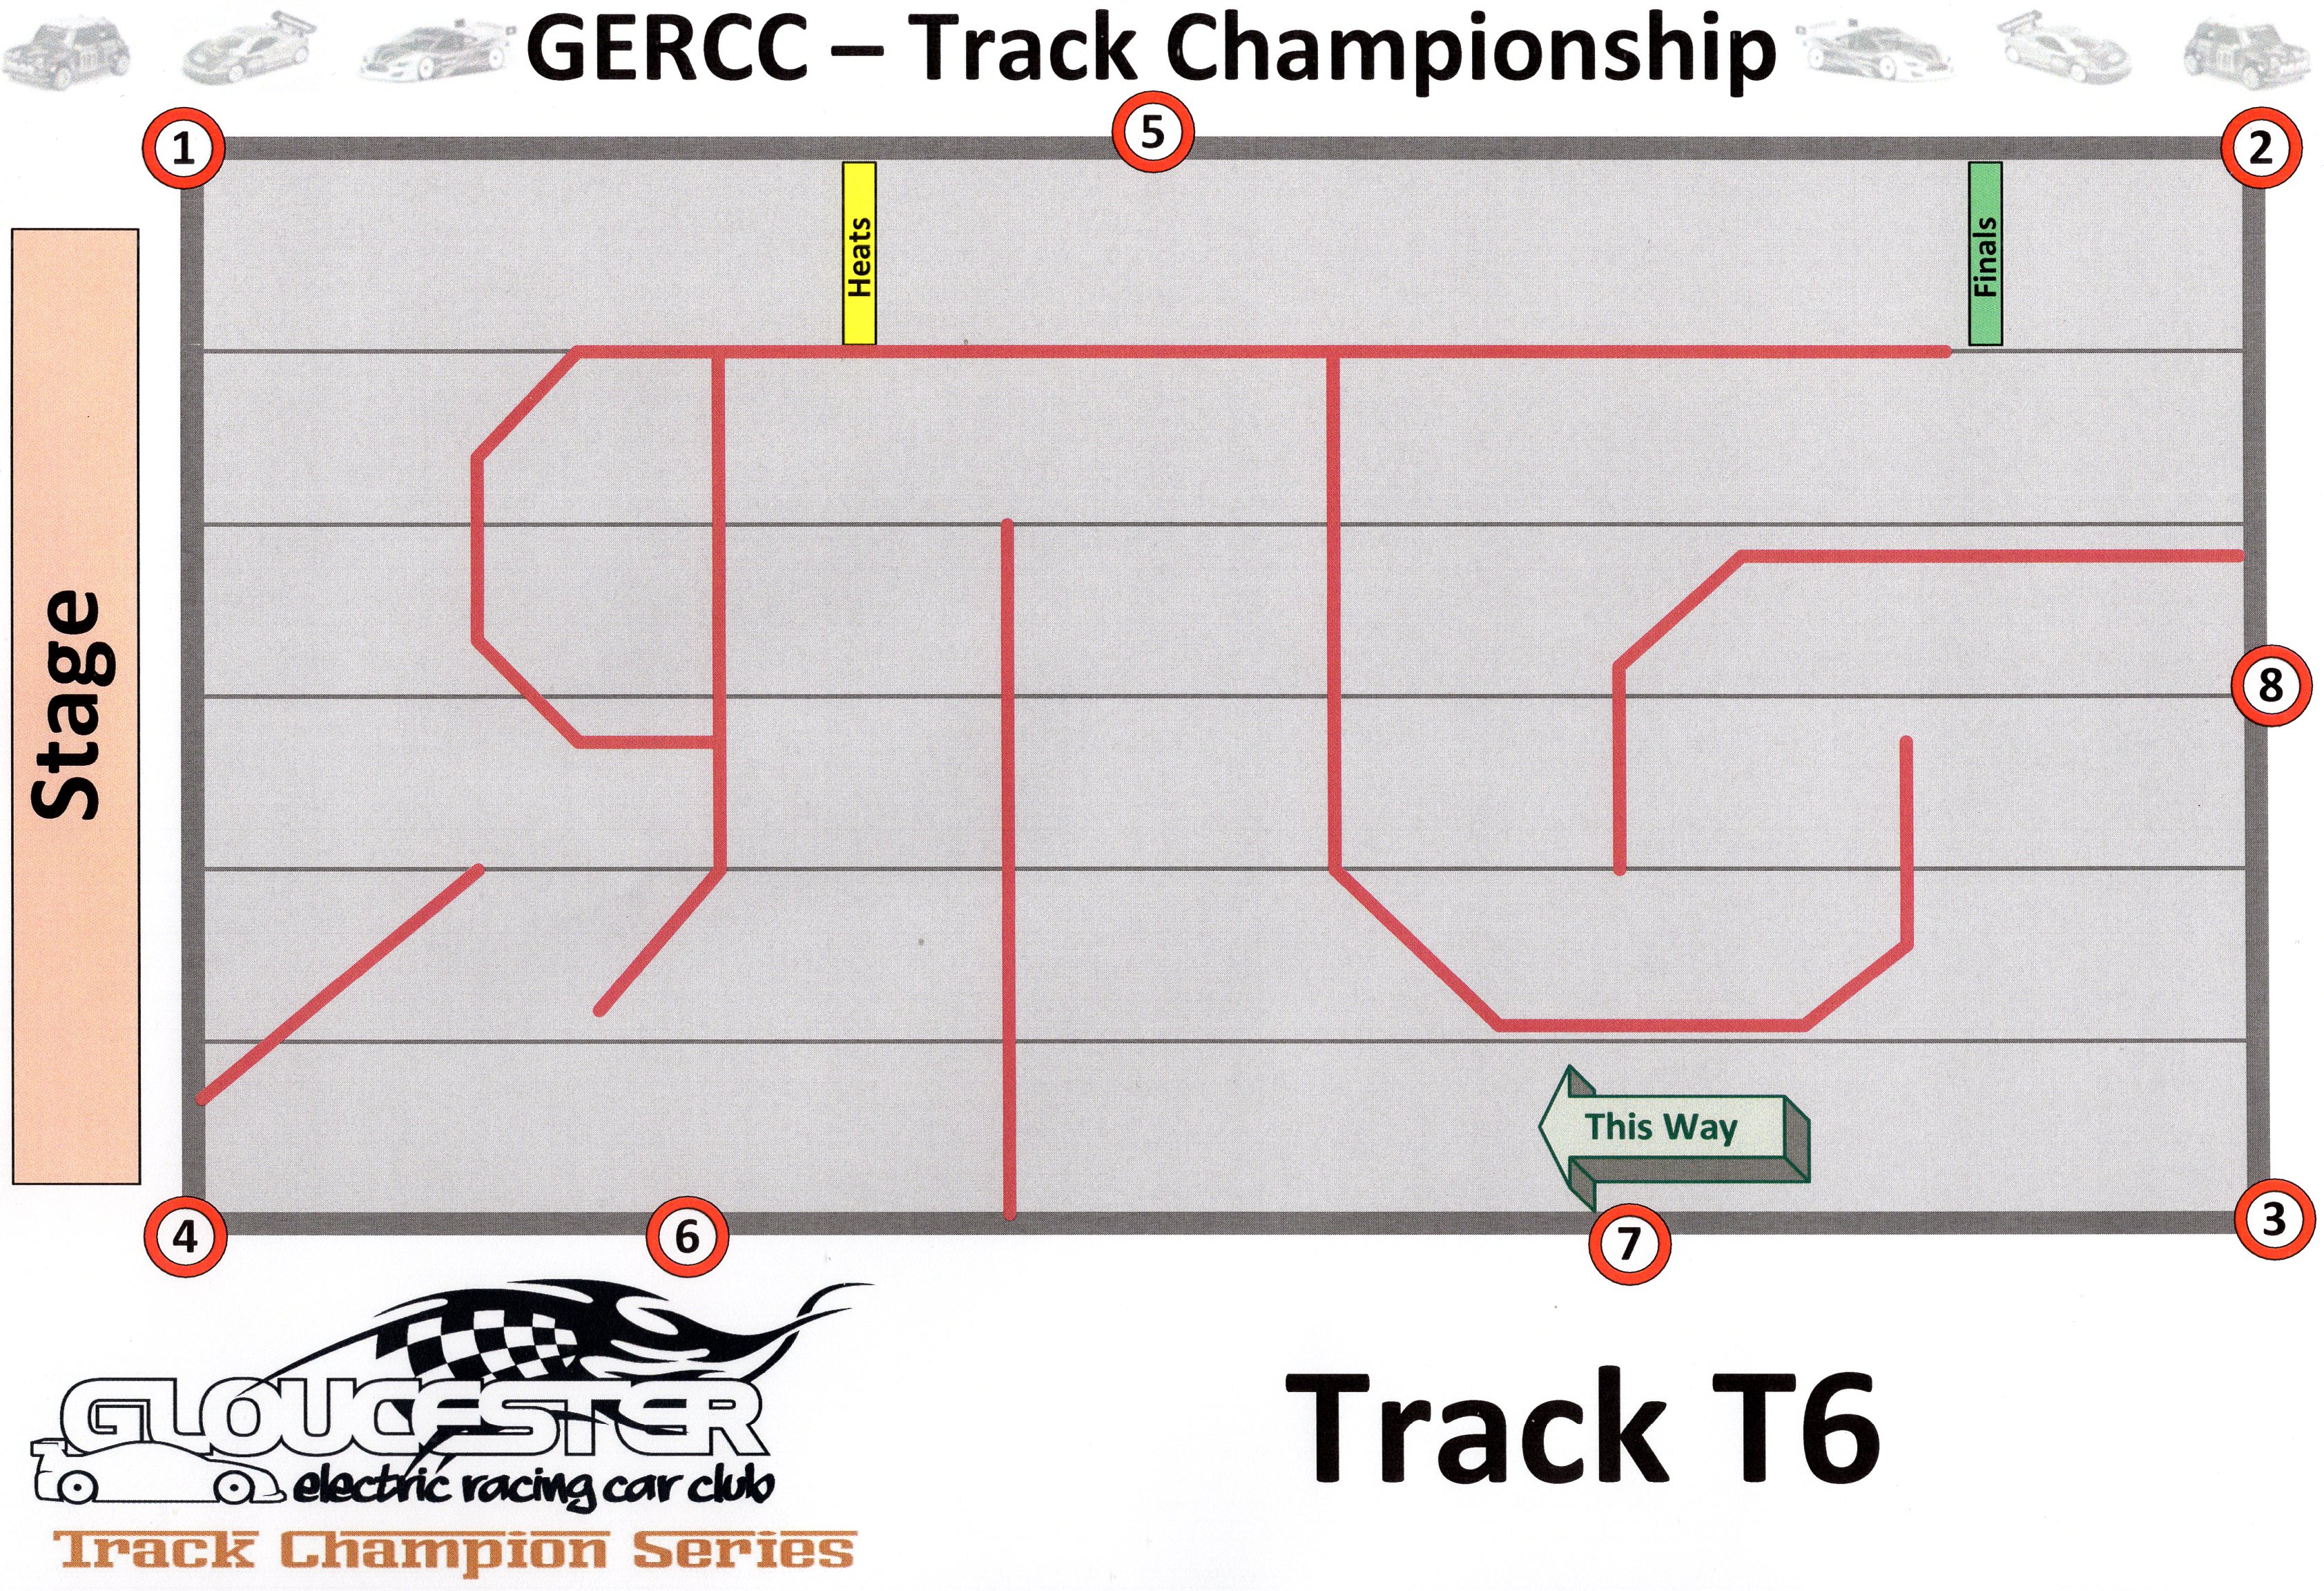 GERCC TCS Track 6